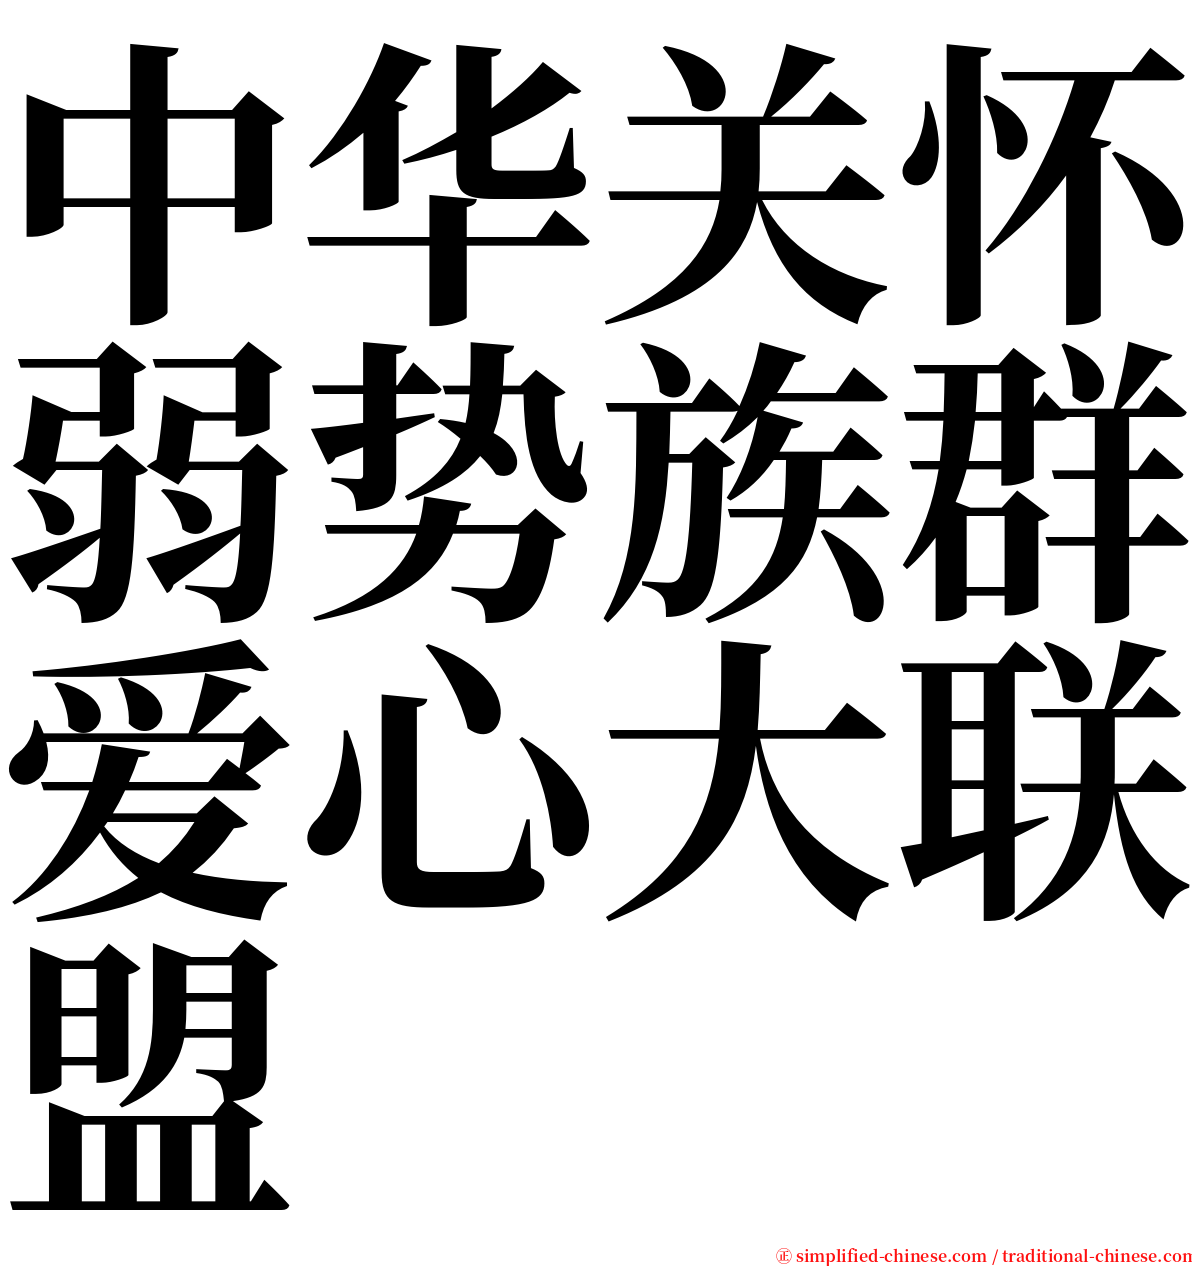 中华关怀弱势族群爱心大联盟 serif font